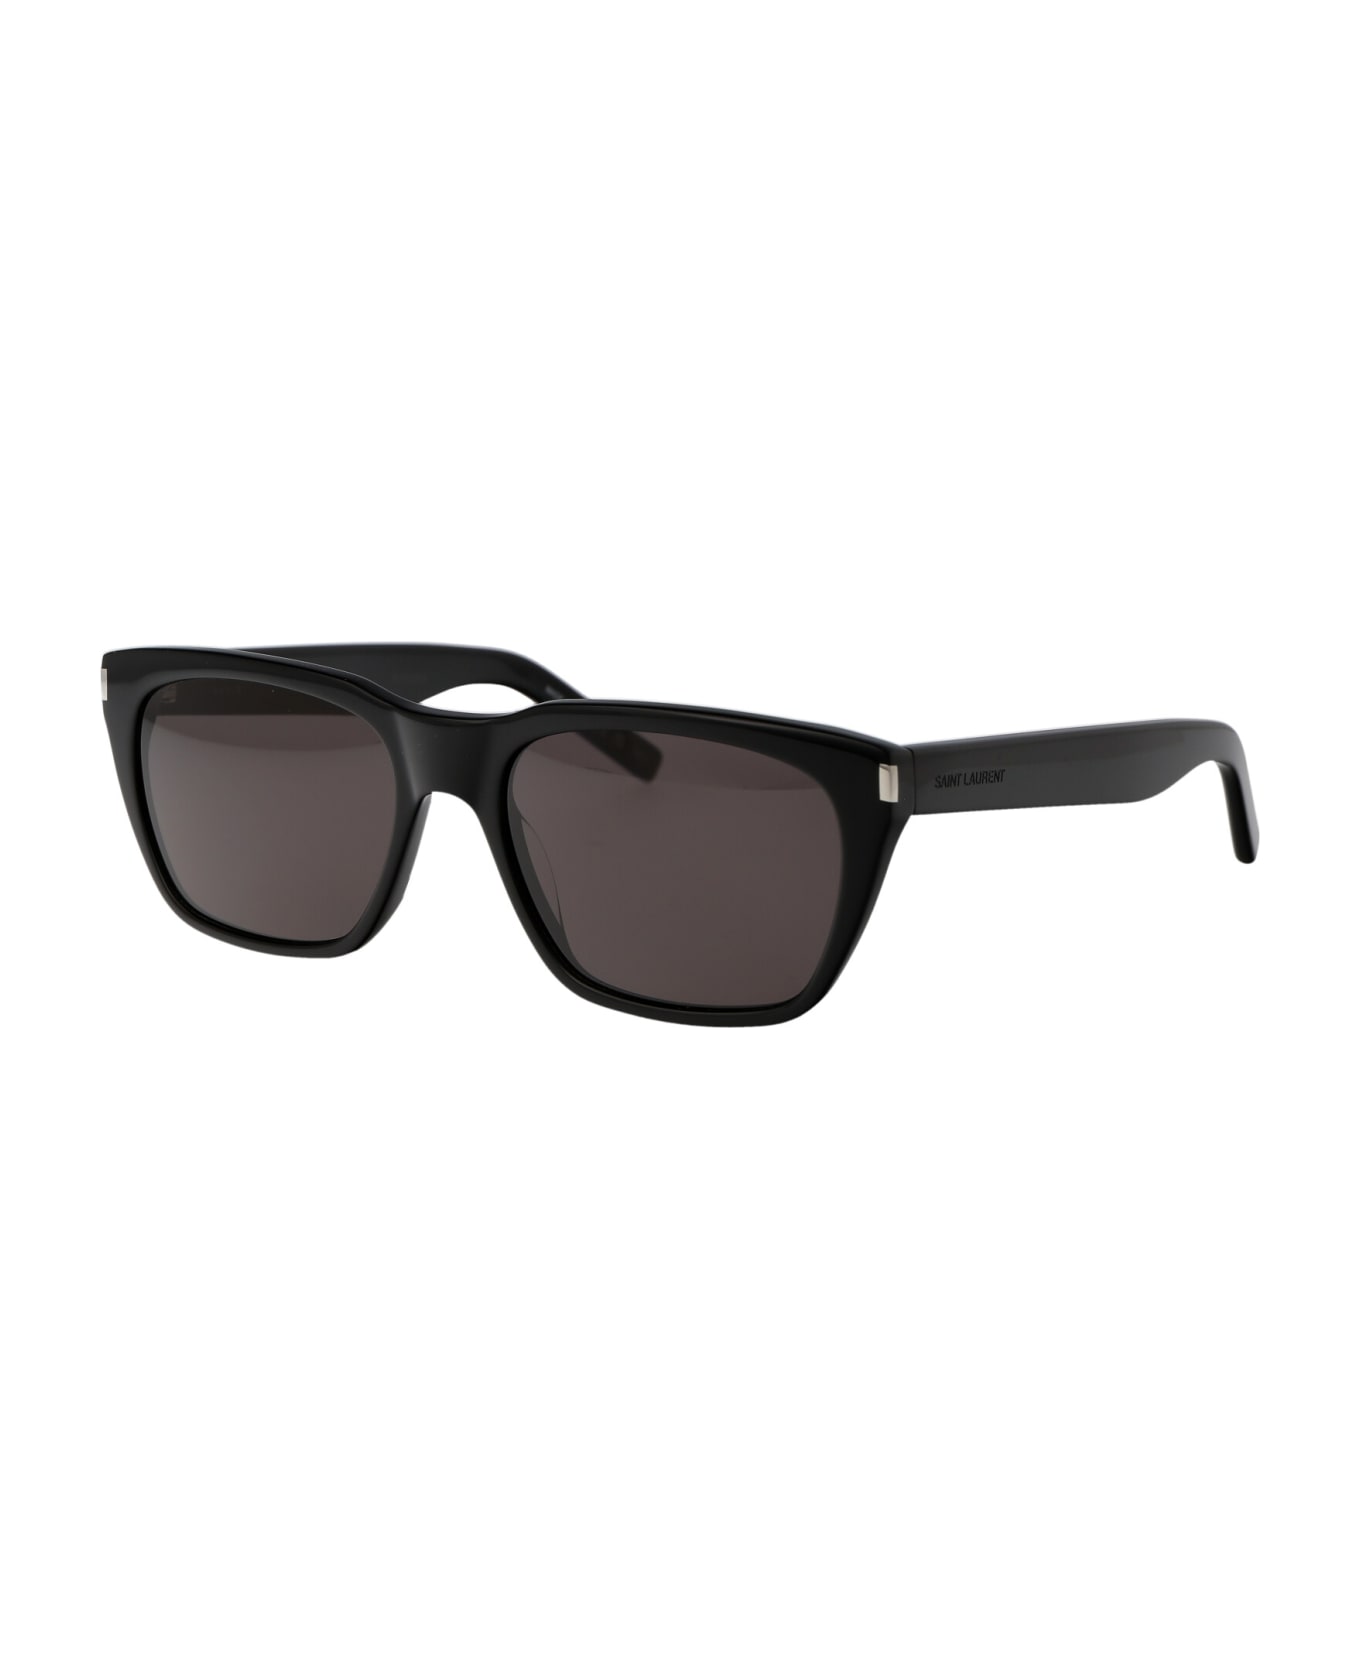 Saint Laurent Eyewear Sl 598 Sunglasses - 001 BLACK BLACK BLACK